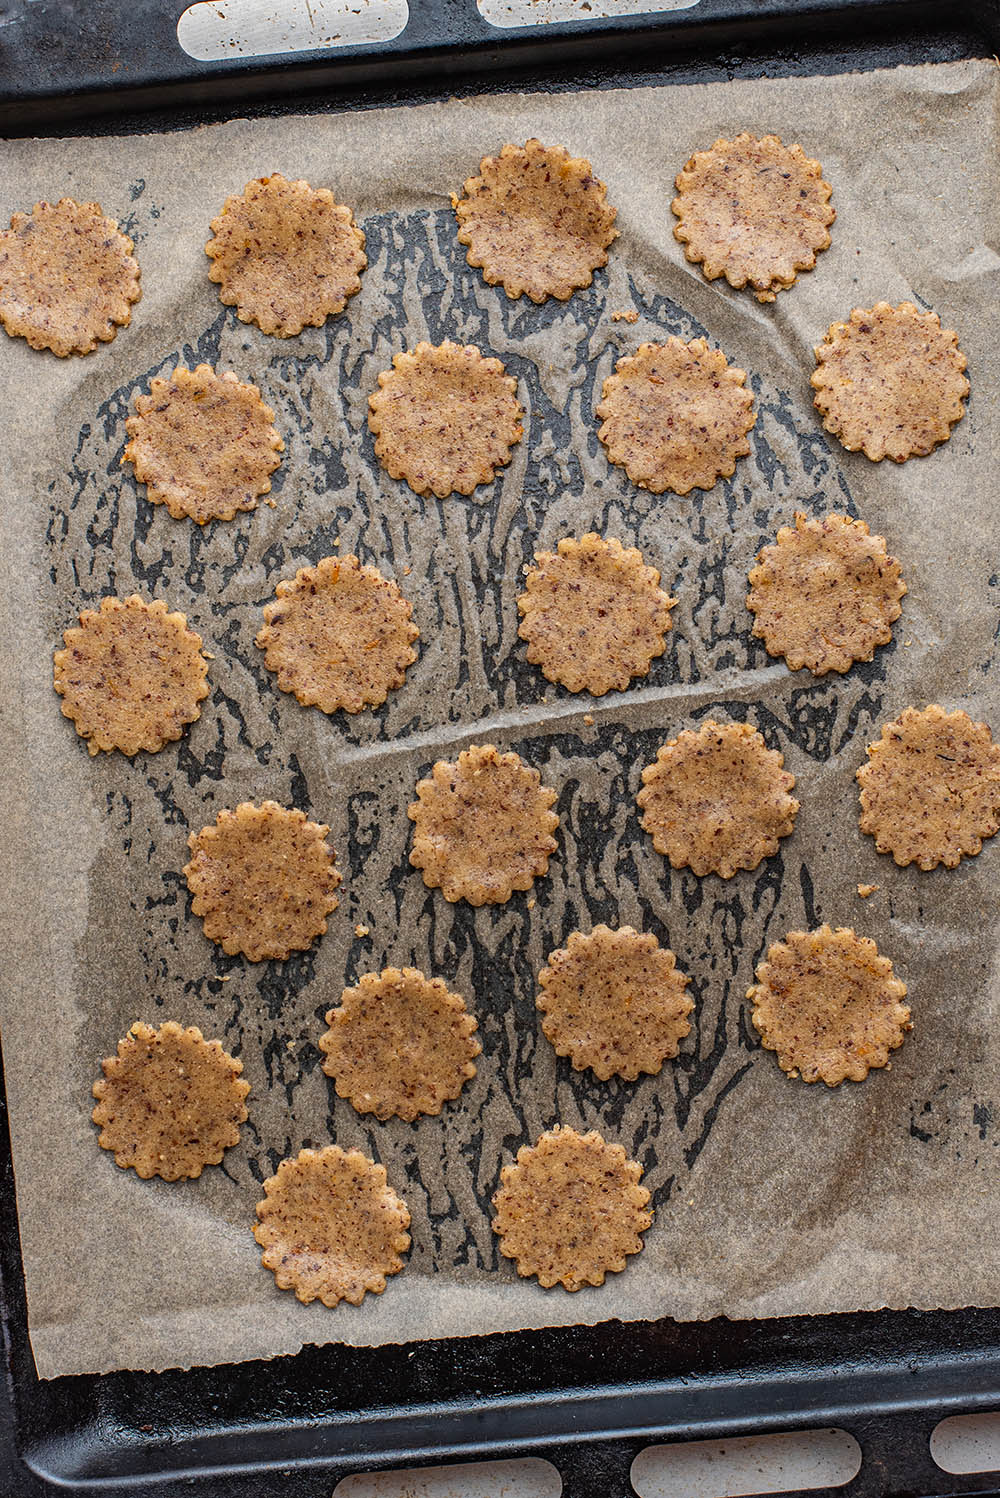 Cookies before baking.